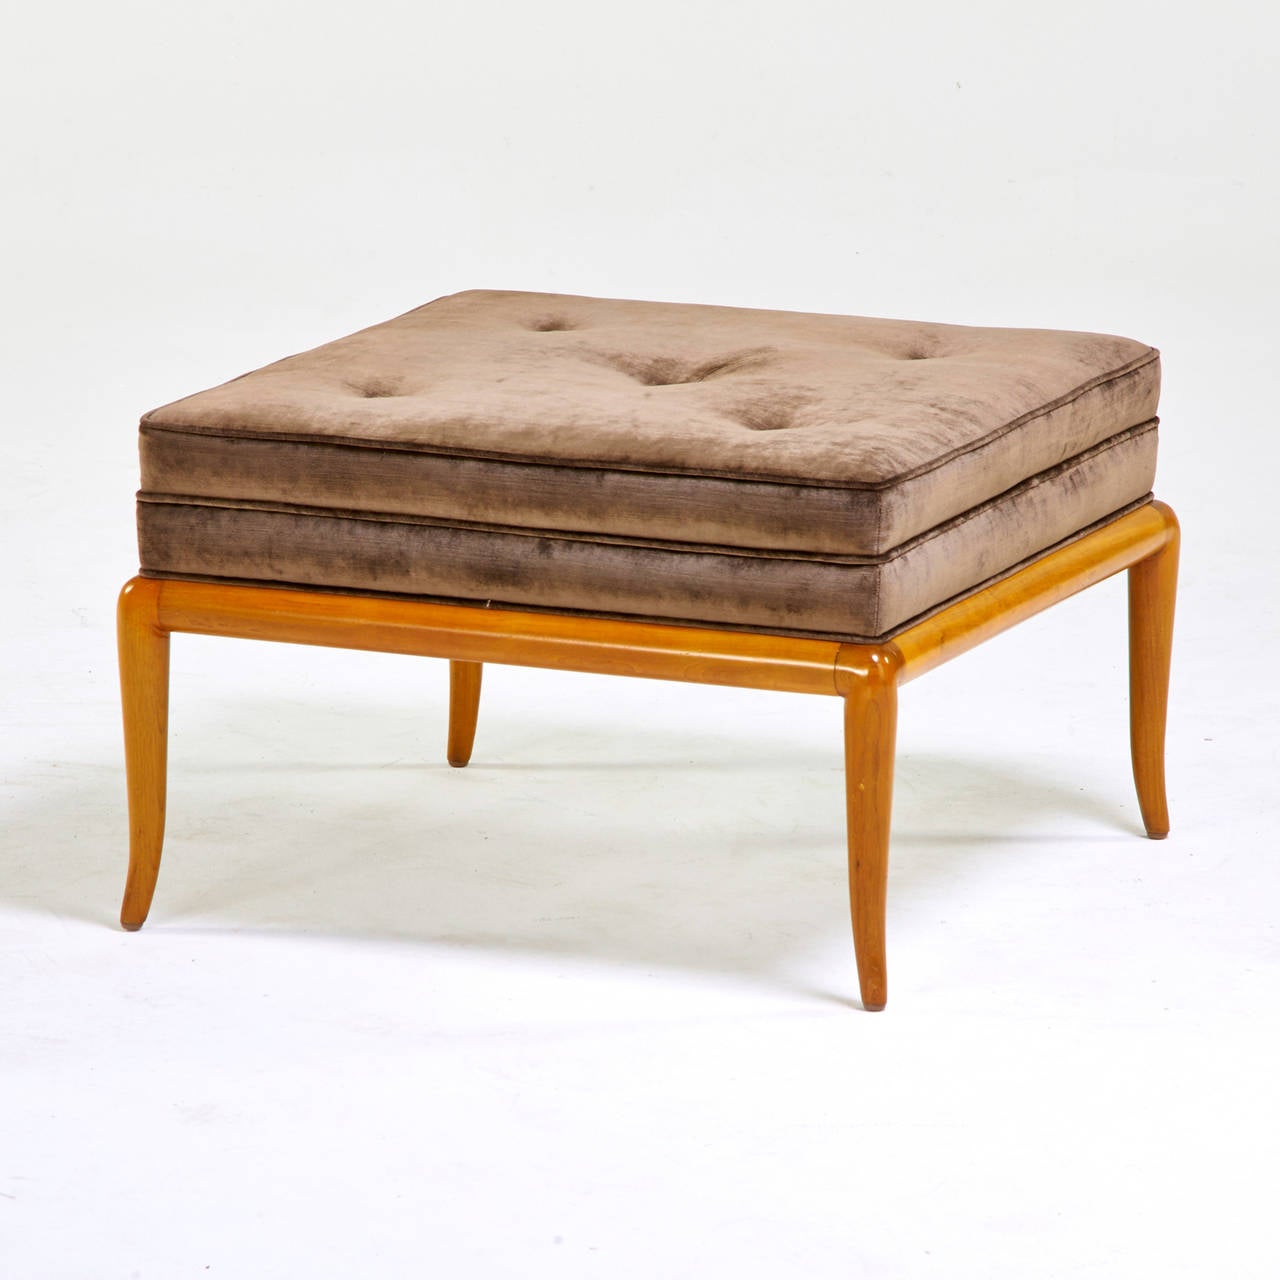 Elegant T.H. Robsjohn-Gibbings ottoman, Grand Rapids, MI, 1960s, bleached walnut, silk velvet upholstery.